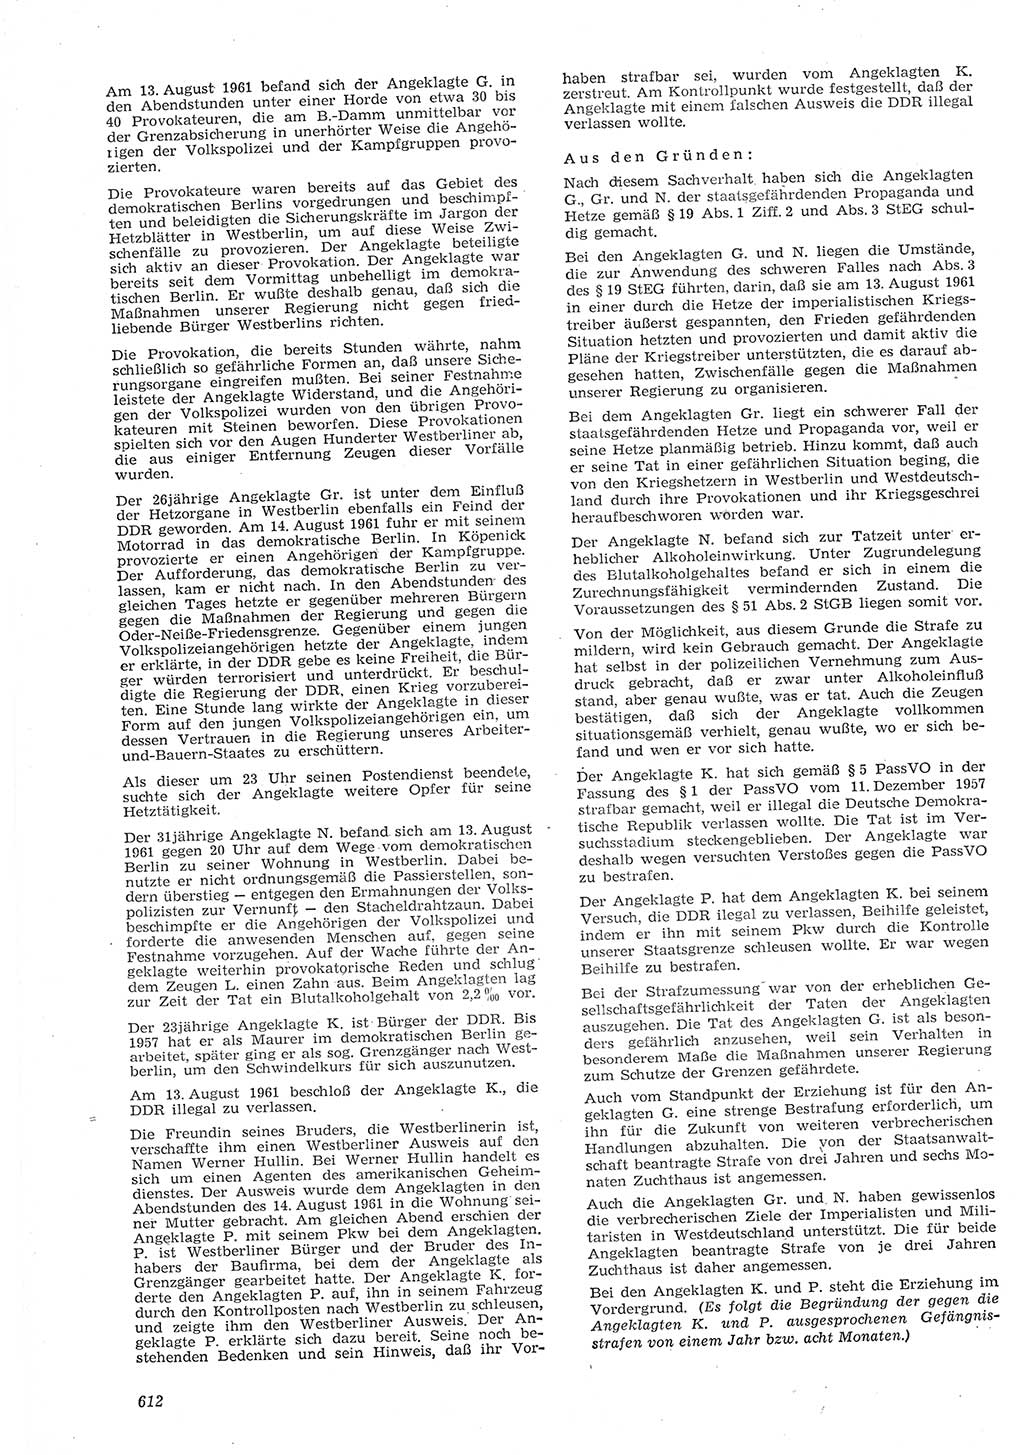 Neue Justiz (NJ), Zeitschrift für Recht und Rechtswissenschaft [Deutsche Demokratische Republik (DDR)], 15. Jahrgang 1961, Seite 612 (NJ DDR 1961, S. 612)